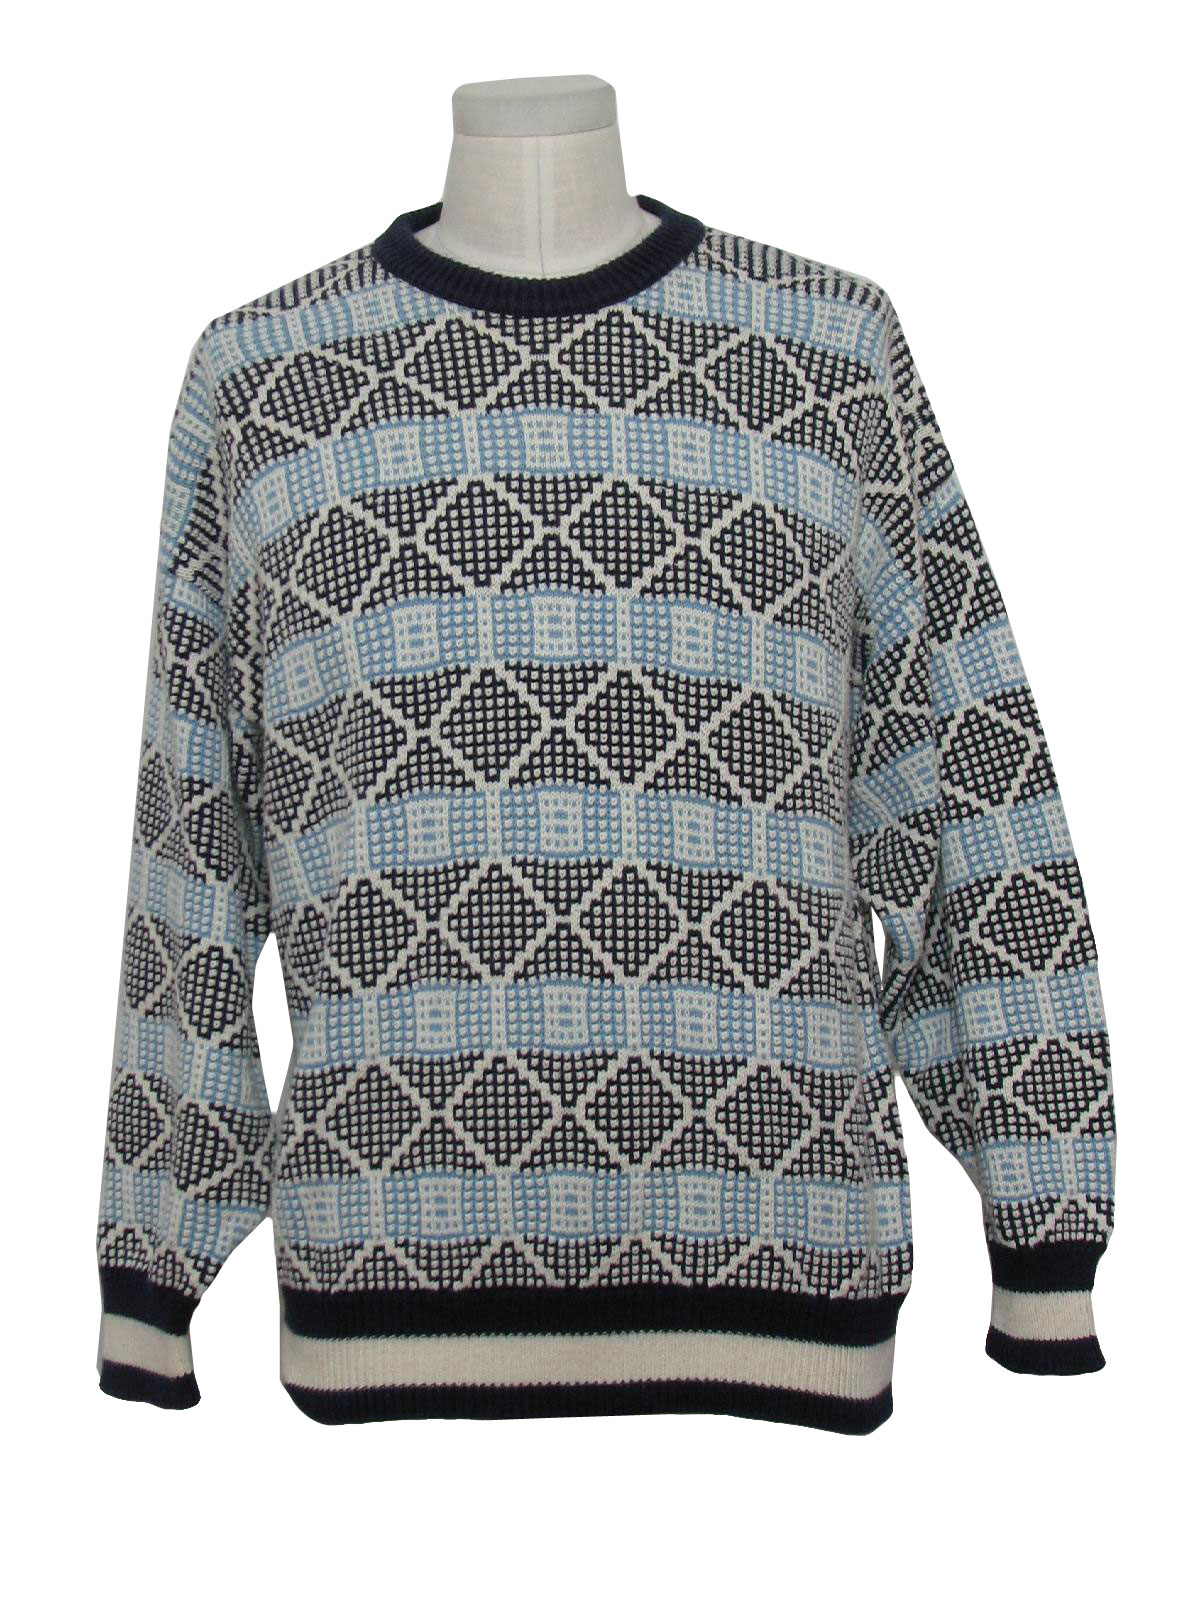 Retro 1980's Sweater (417 Van Heusen) : 80s -417 Van Heusen- Mens white ...